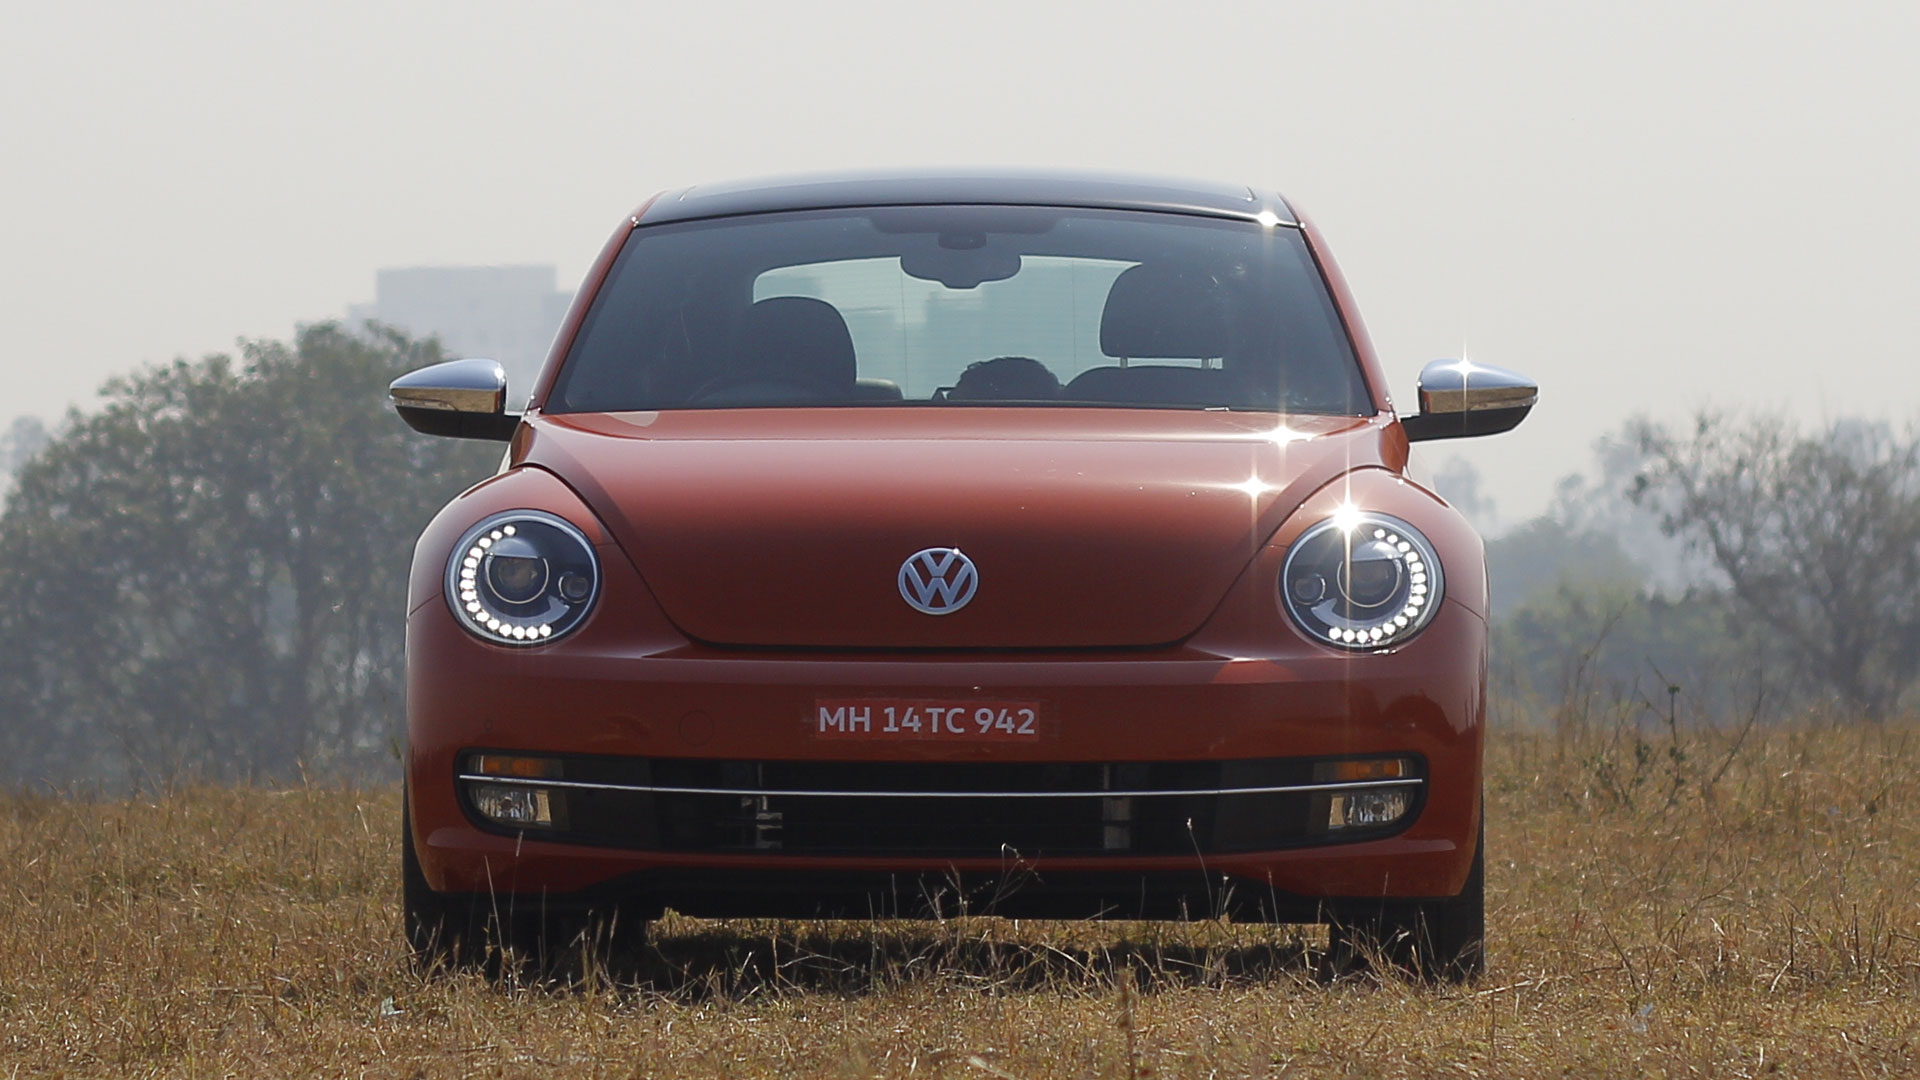 Volkswagen Beetle 2016 STD Compare